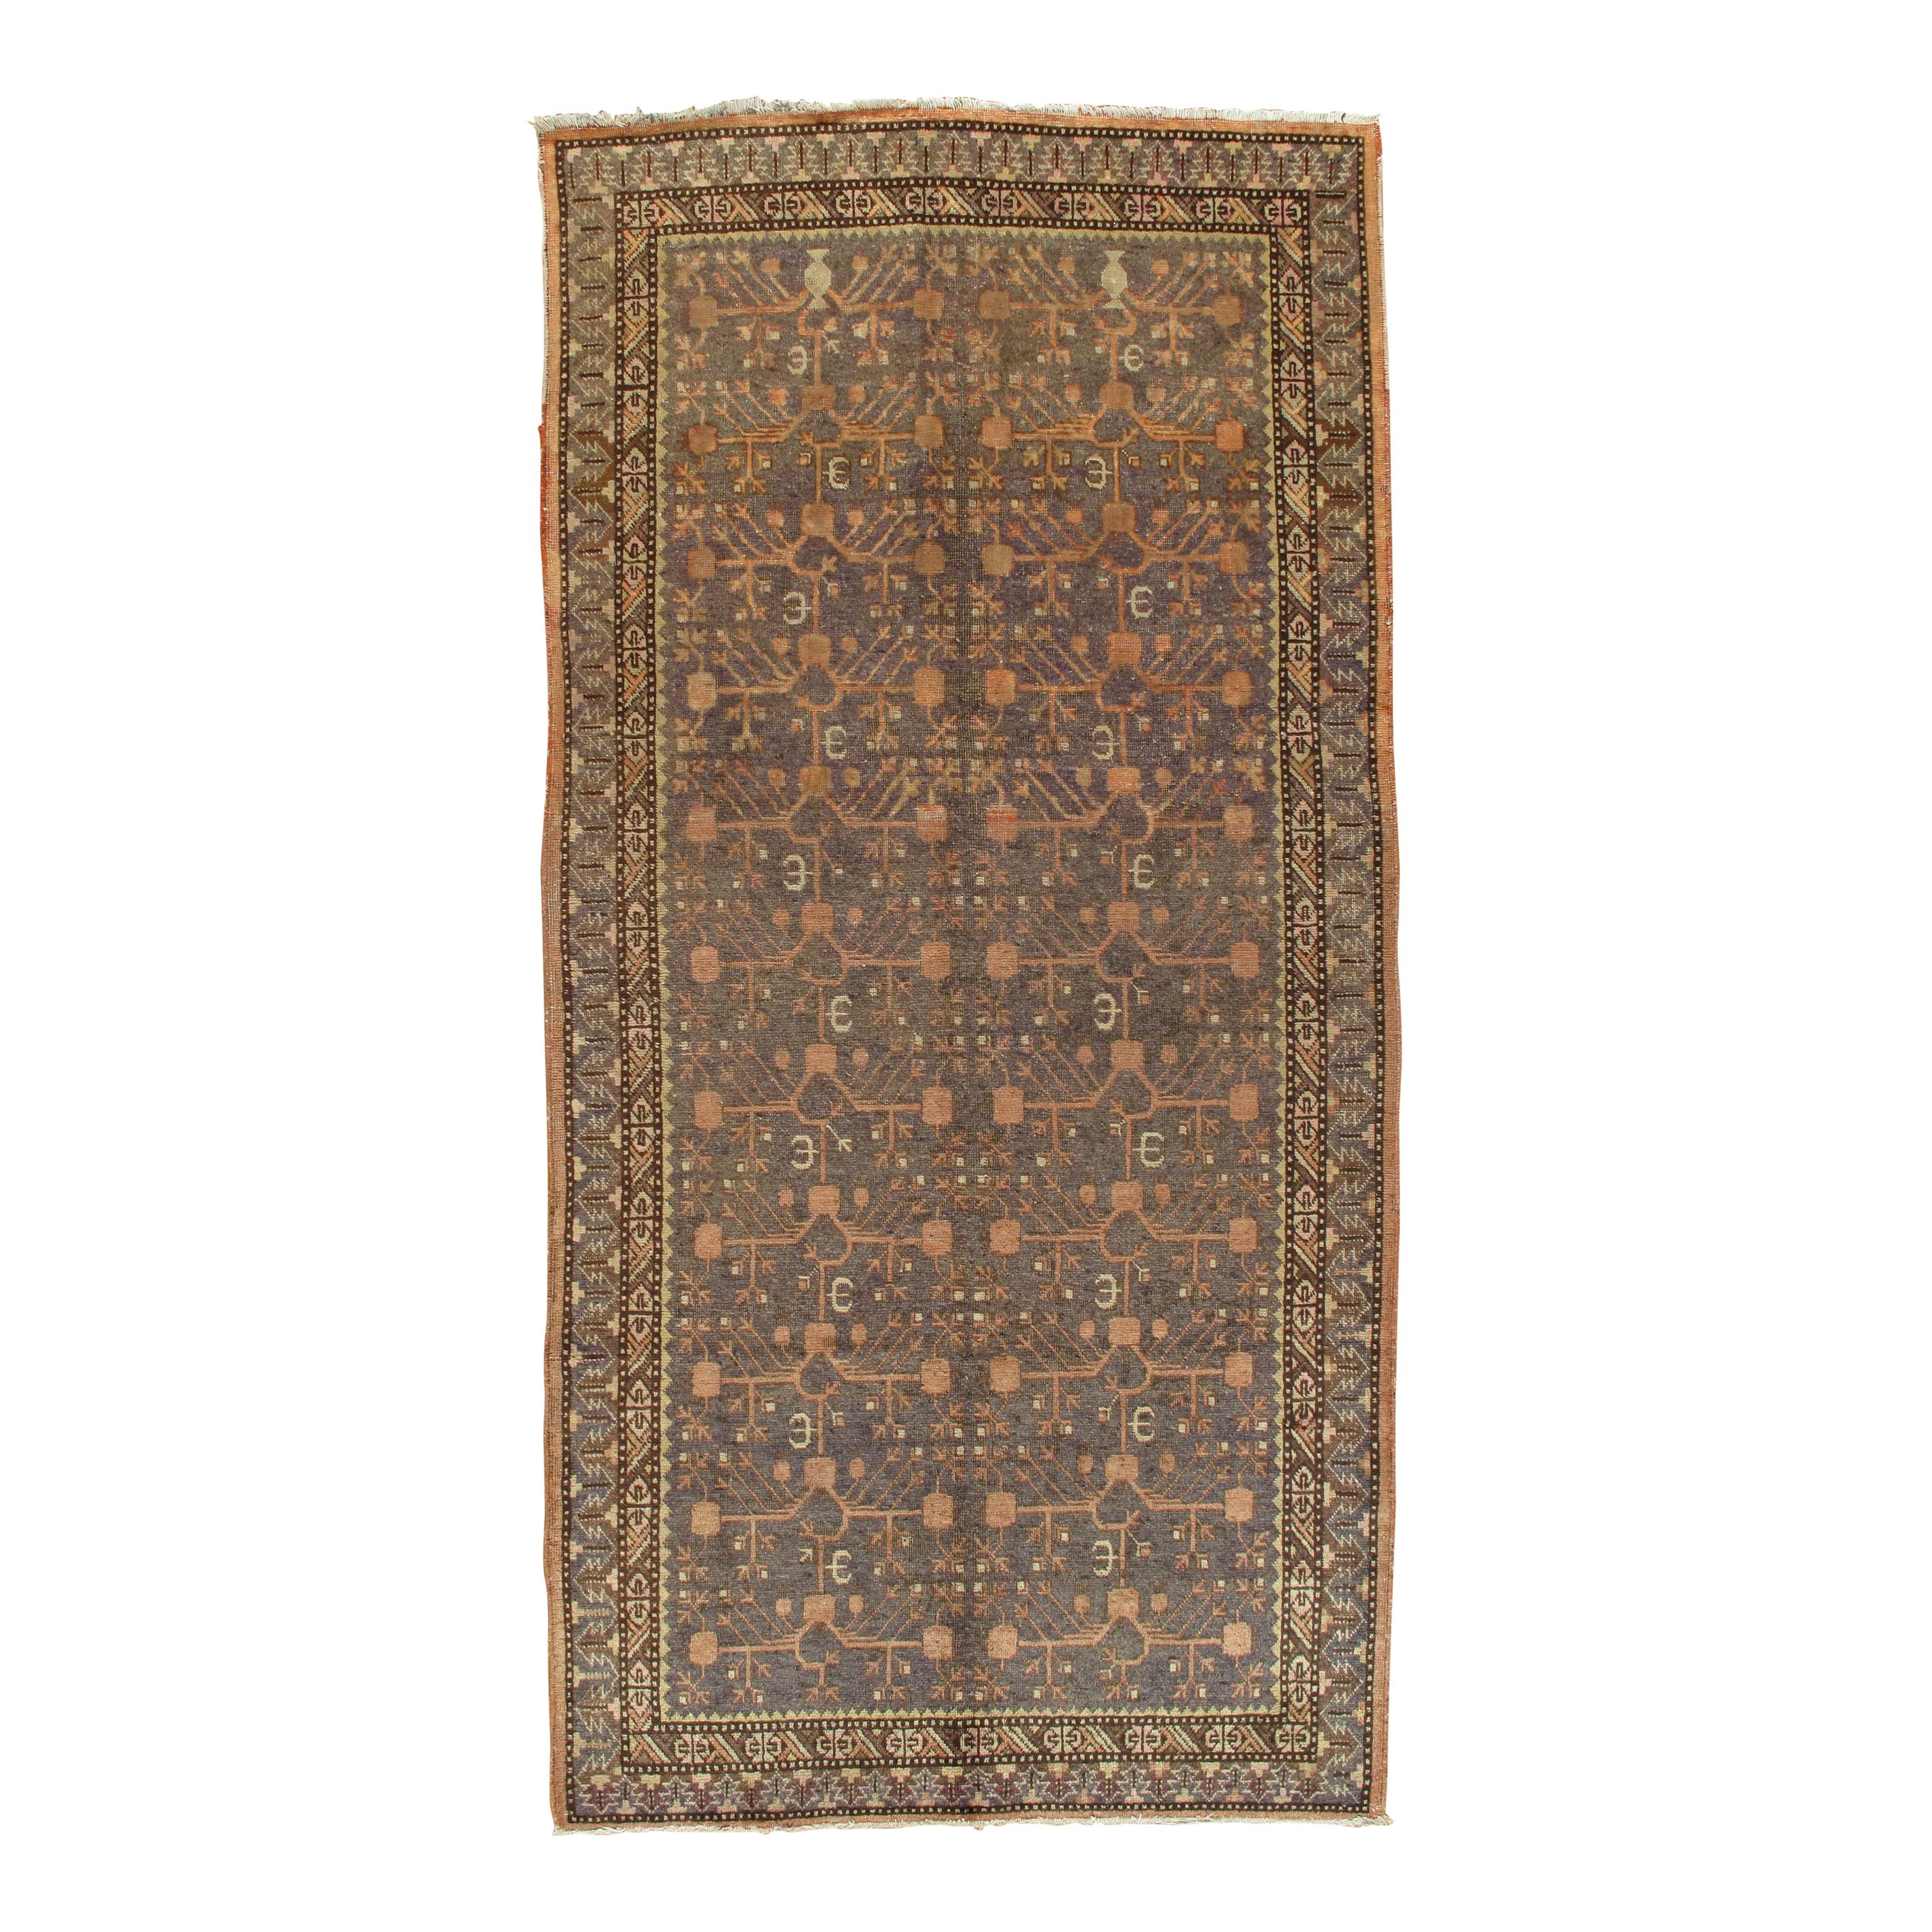 Vintage Khotan Rug, Handmade Oriental Rug, Soft shrimp, Beige, Brown, Char Gray